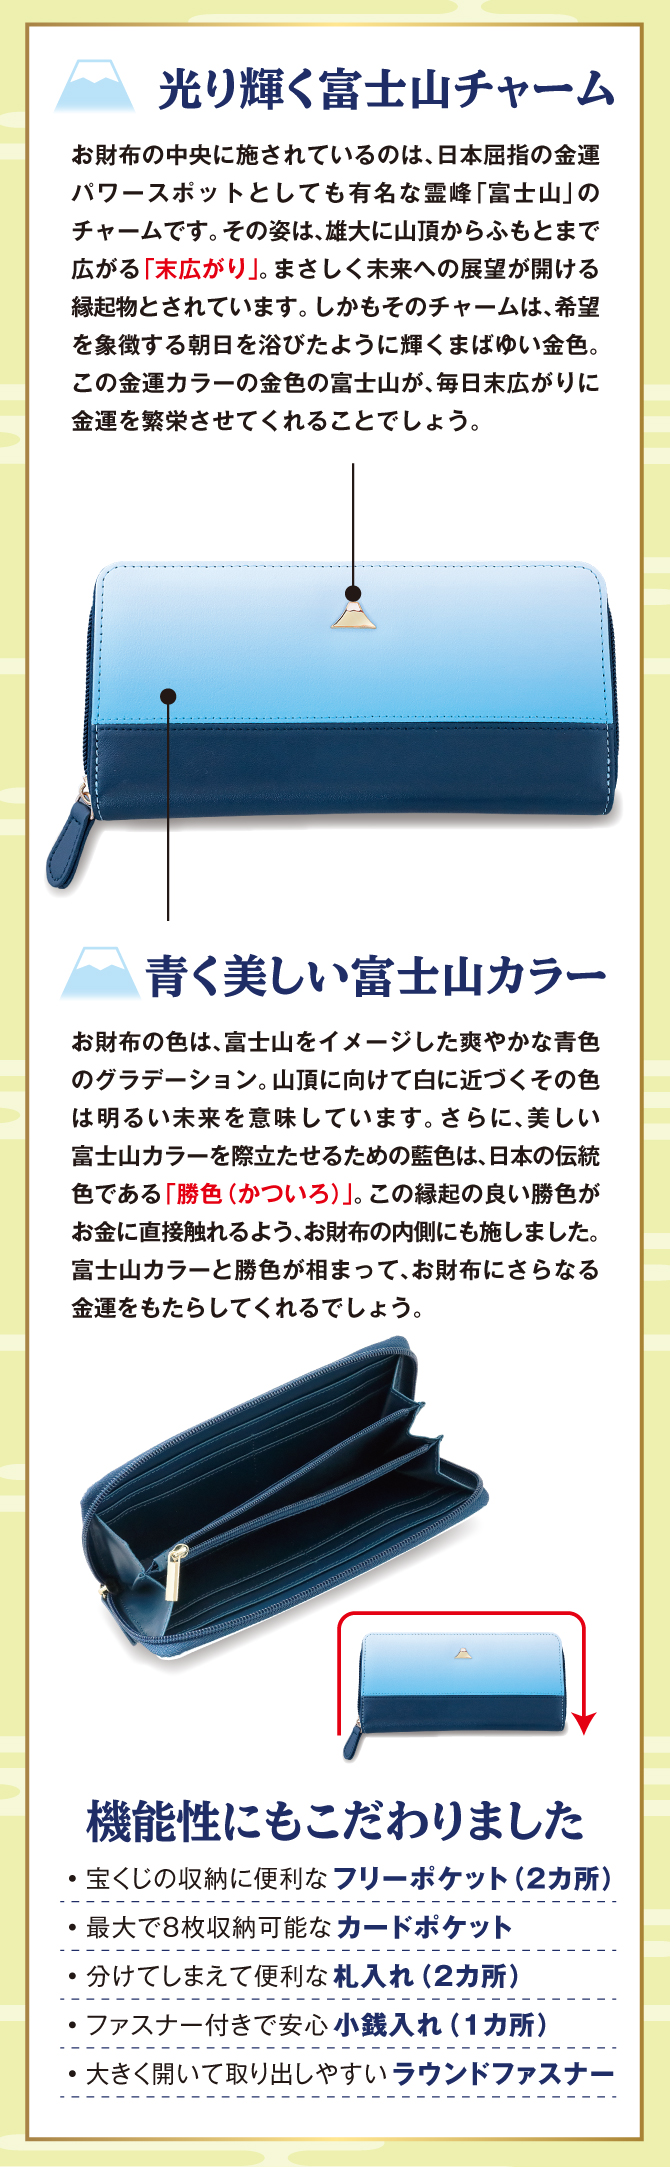 金運パワースポットとされる富士山の金運財布。富士山の金運パワーが期待できる金運財布